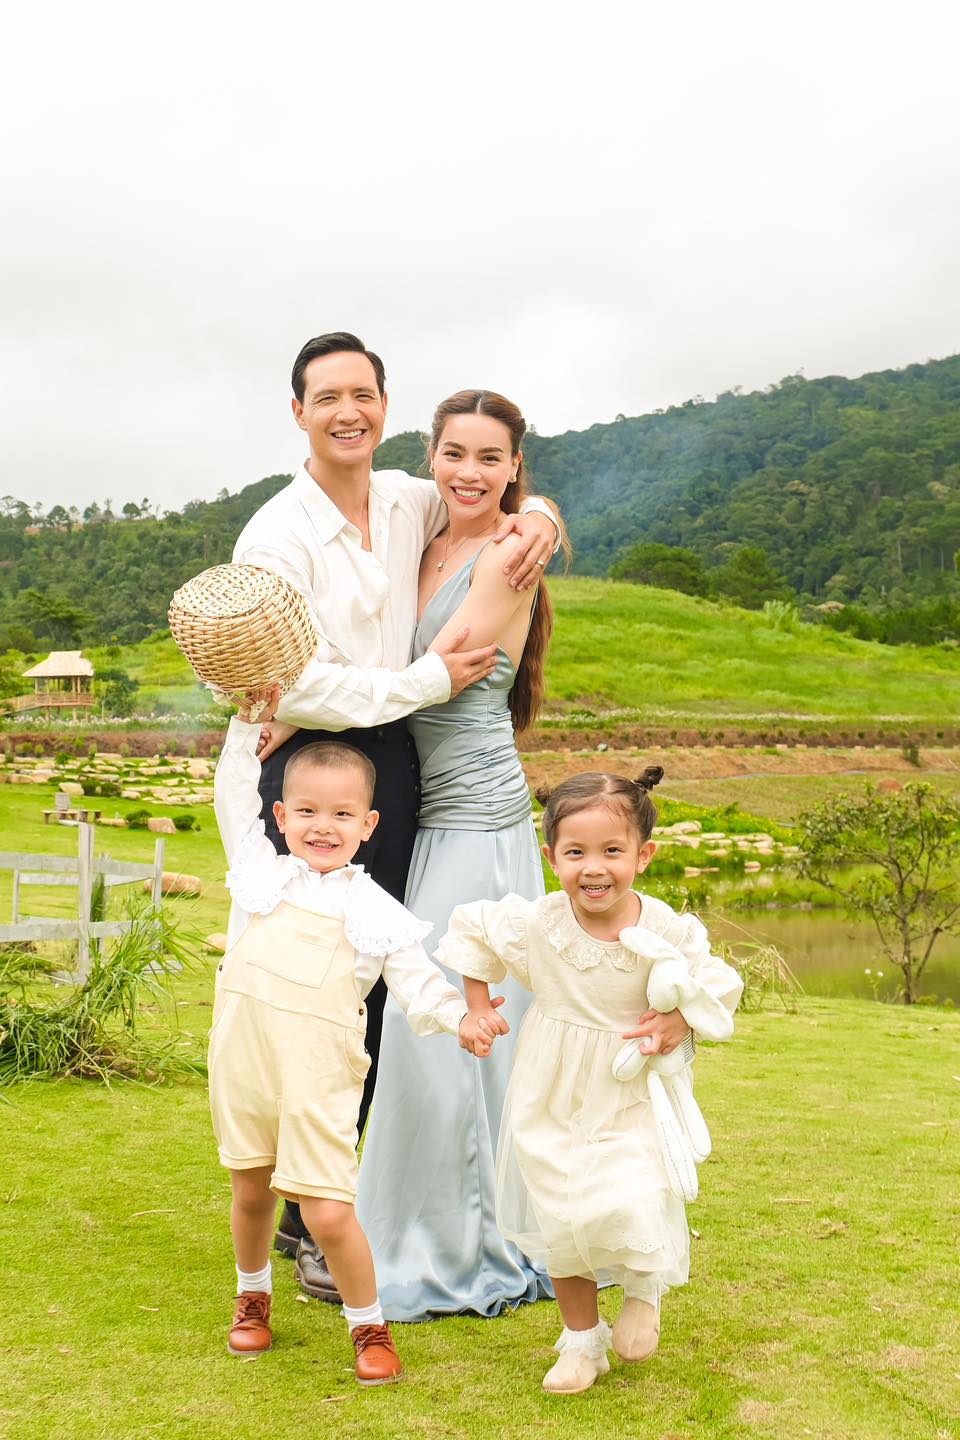 Hồ Ngọc Hà và Kim Lý tổ chức đám cưới đặc biệt cùng 2 con Leon Lisa, hứa hẹn điều hoành tráng vào năm sau - ảnh 5